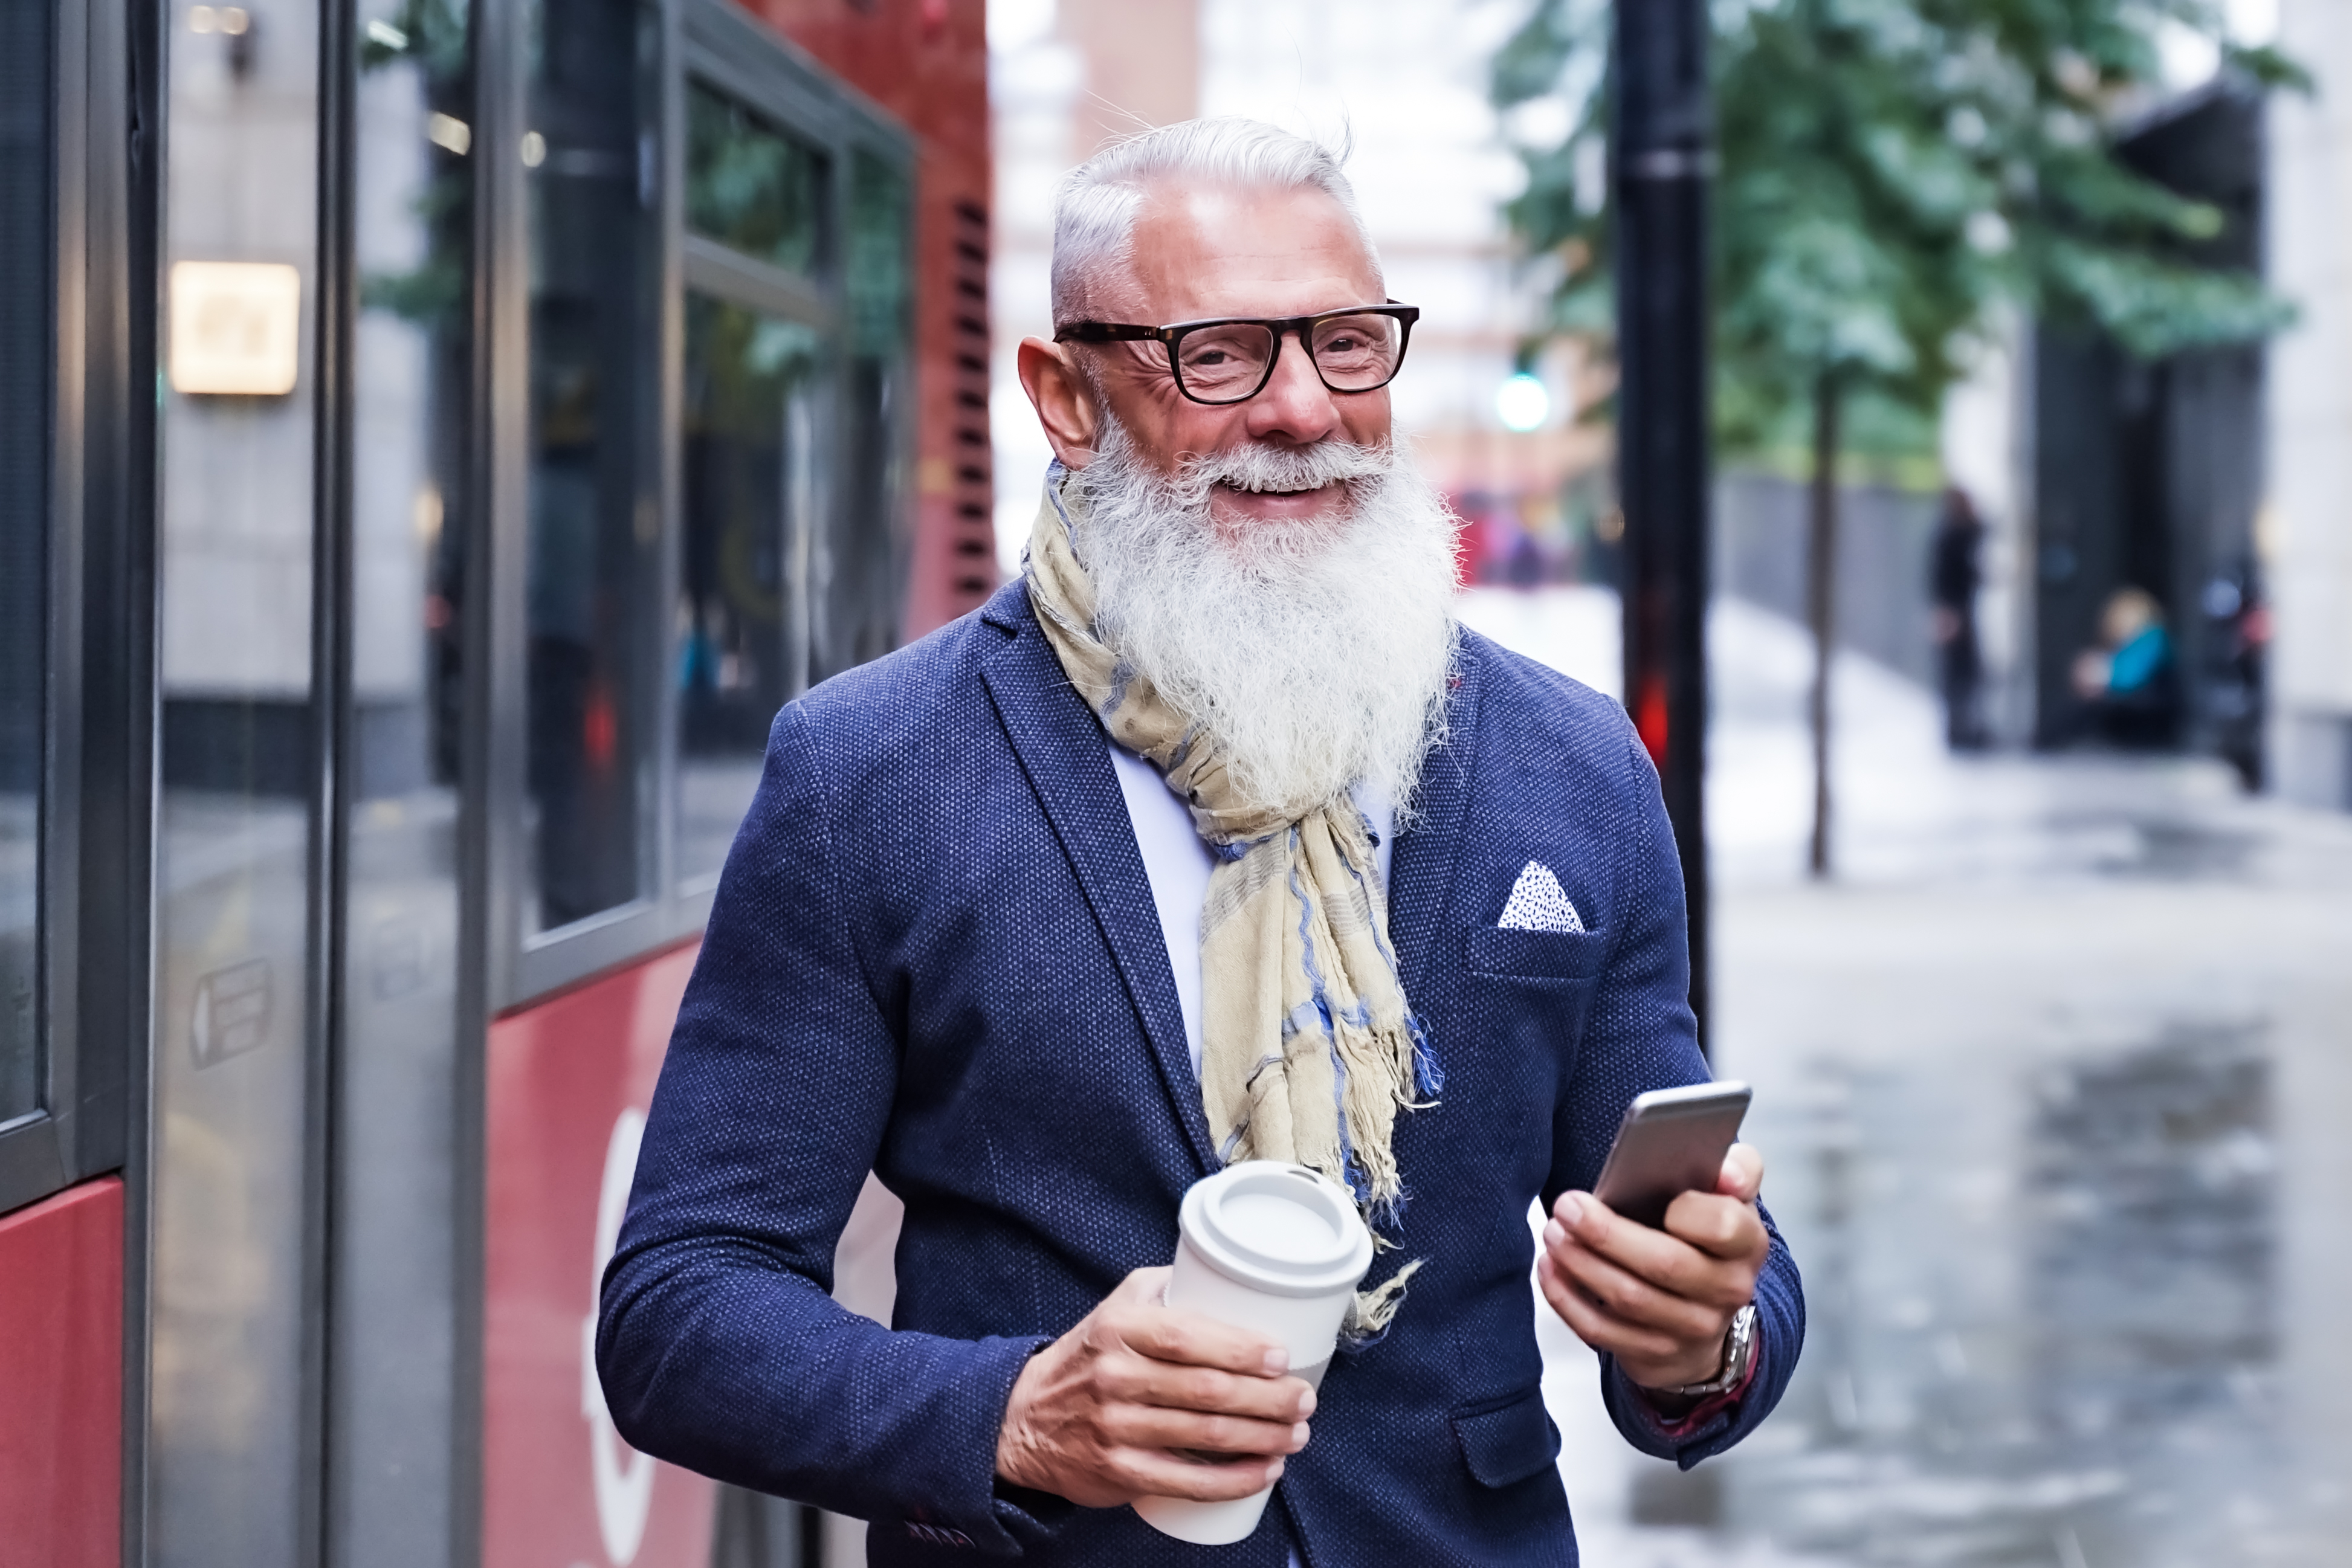 Un hombre mayor caminando por una calle | Fuente: Shutterstock